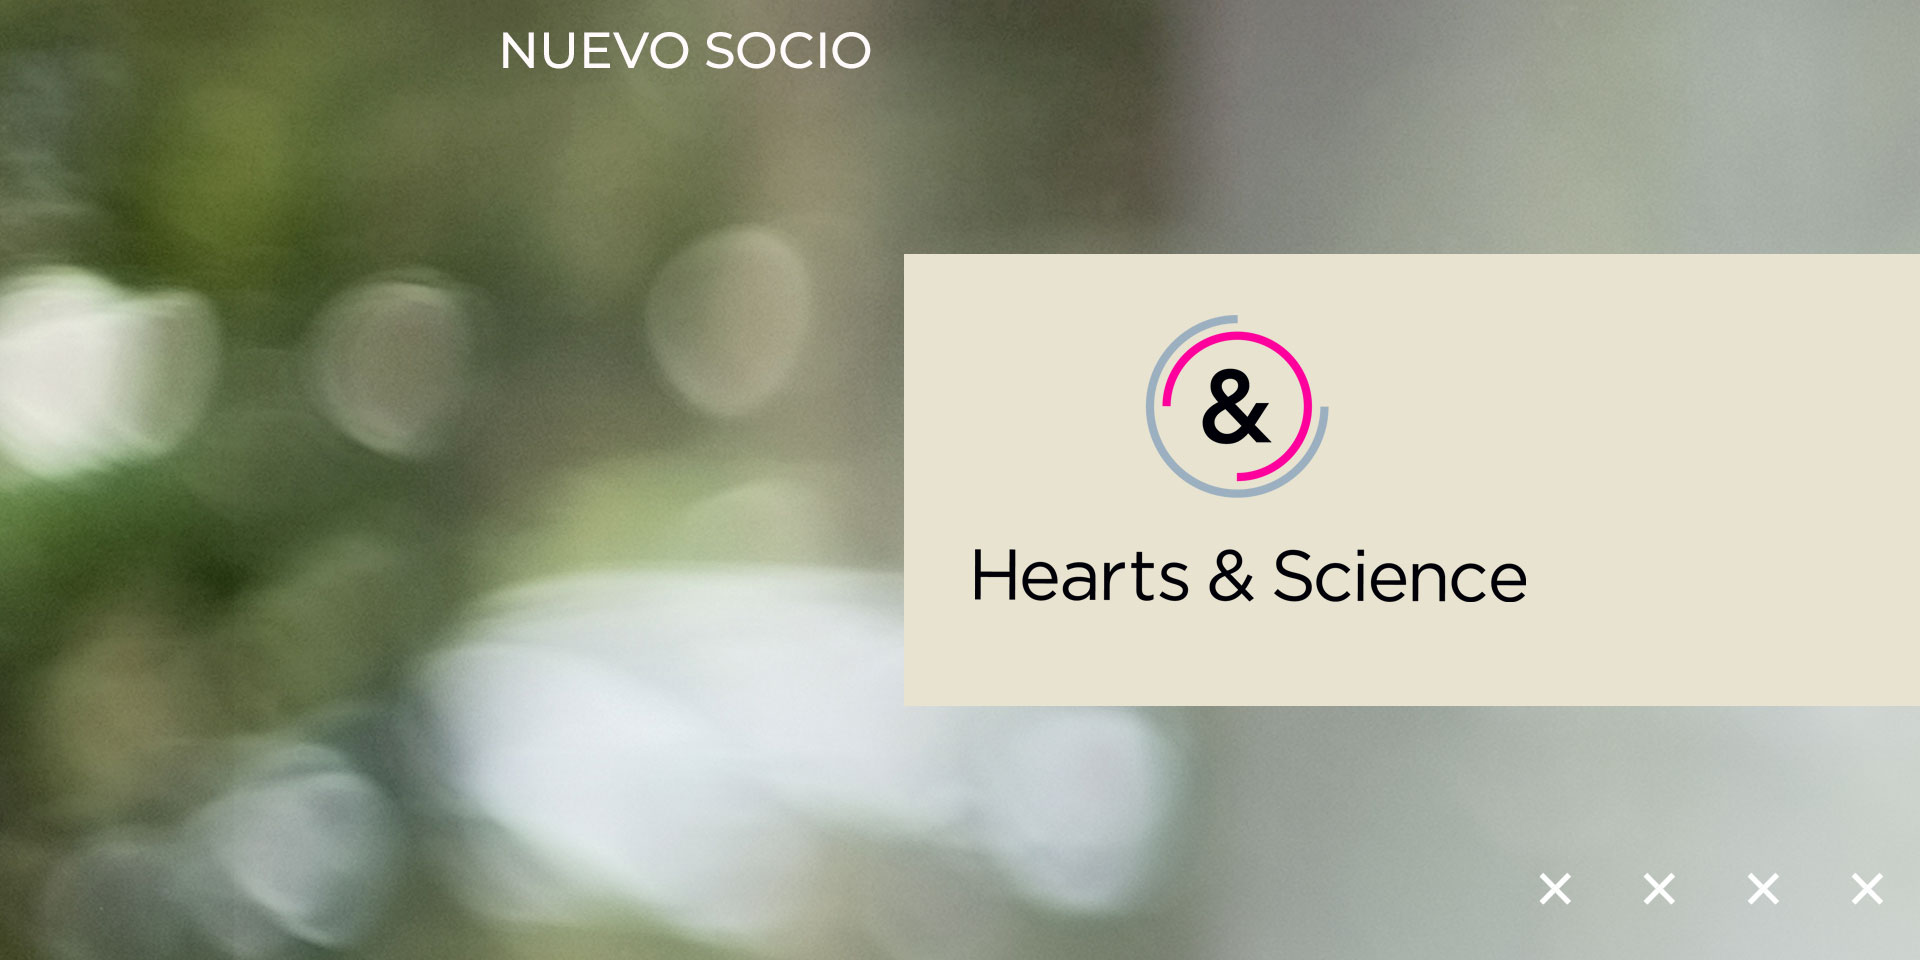 Hearts & Science, la nueva empresa socia de la AMDD